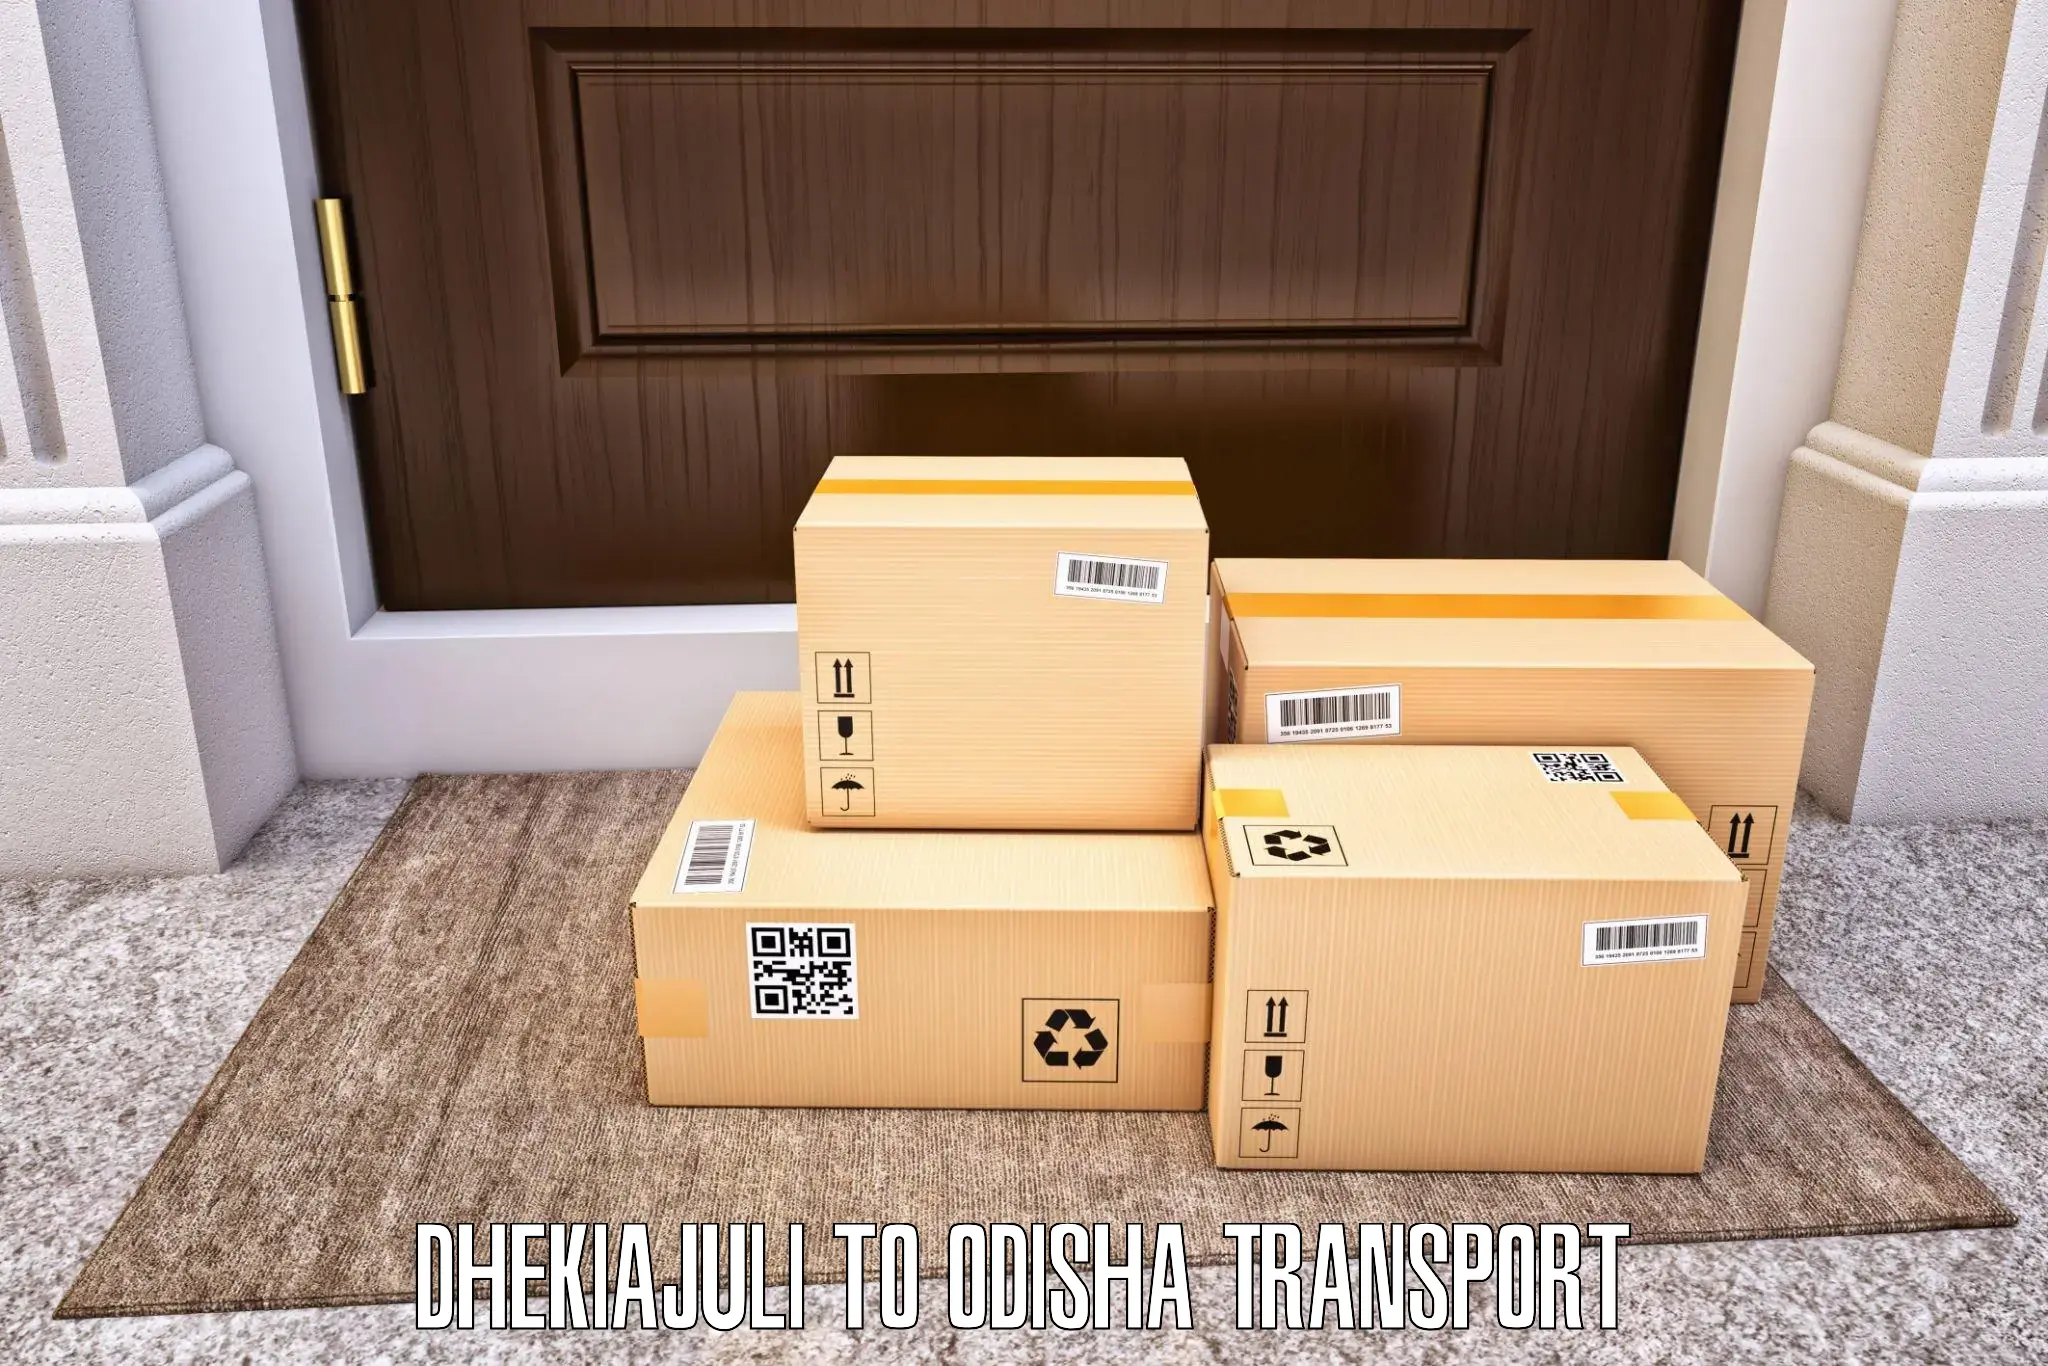 Daily transport service Dhekiajuli to Ukhunda